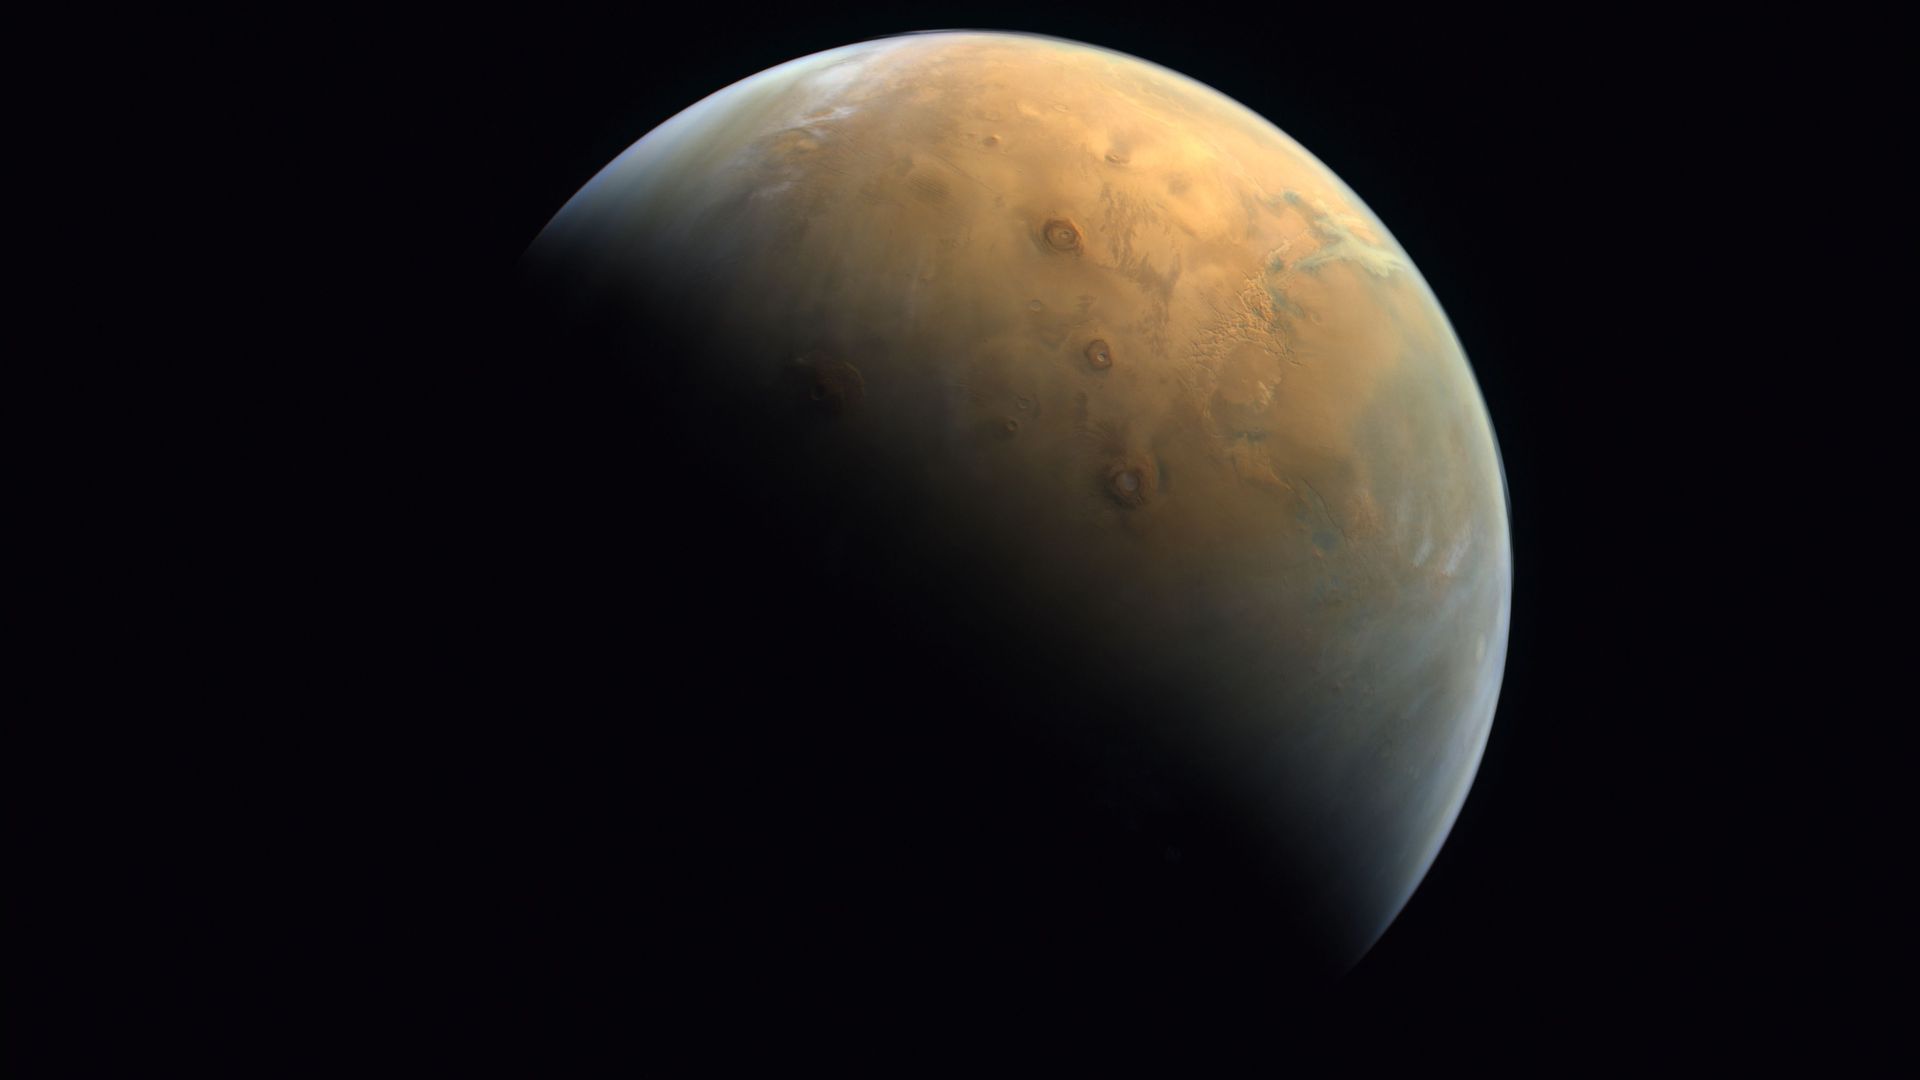 Mars as seen by the UAE's Hope probe.